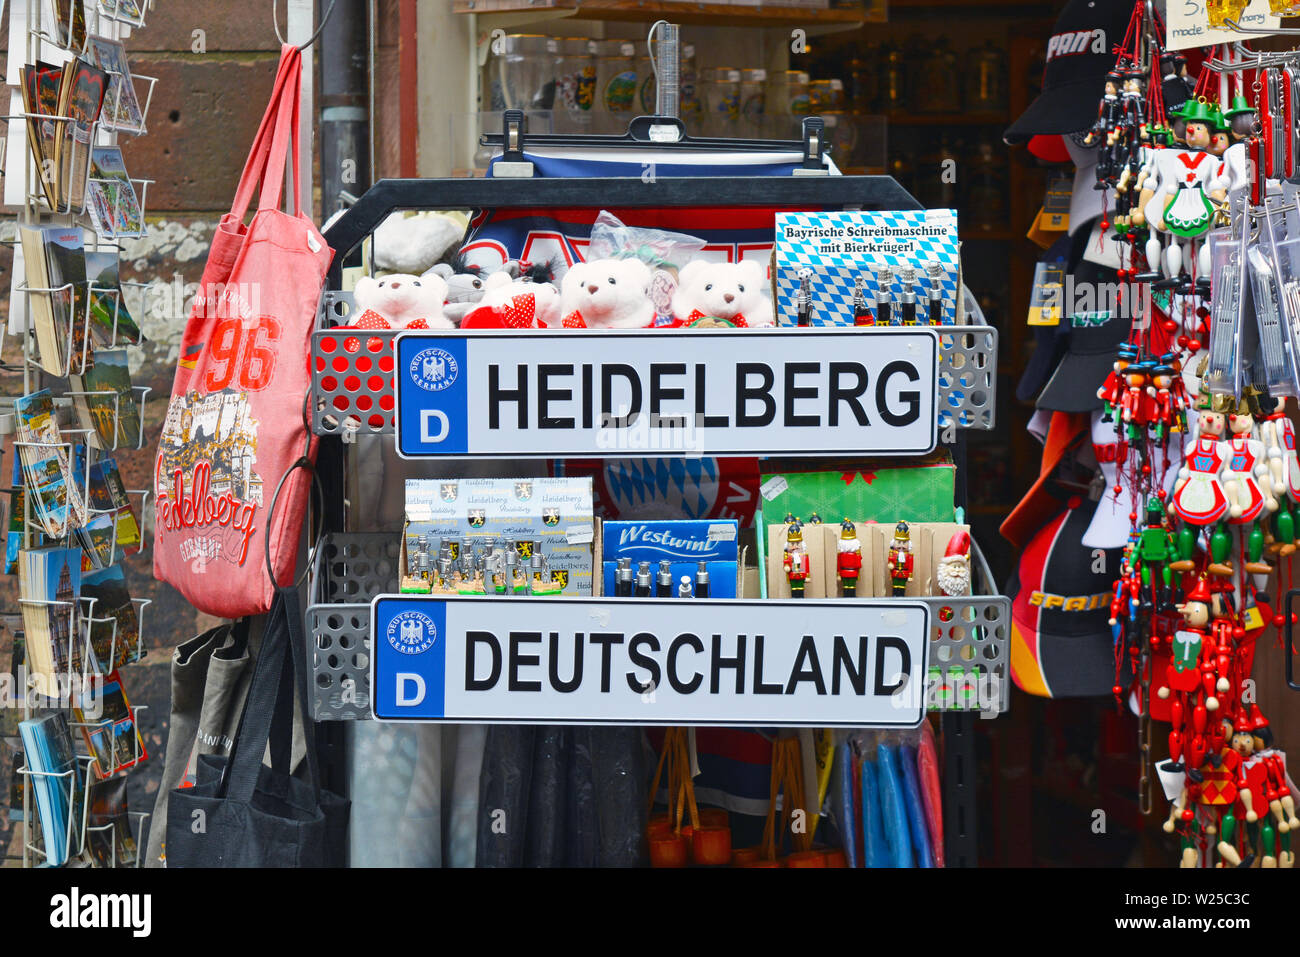 Negozio di souvenir con stand vari souvenir legati alla città di Heidelberg in Germania con targa, il giocattolo di peluche orsi, borse, Foto Stock